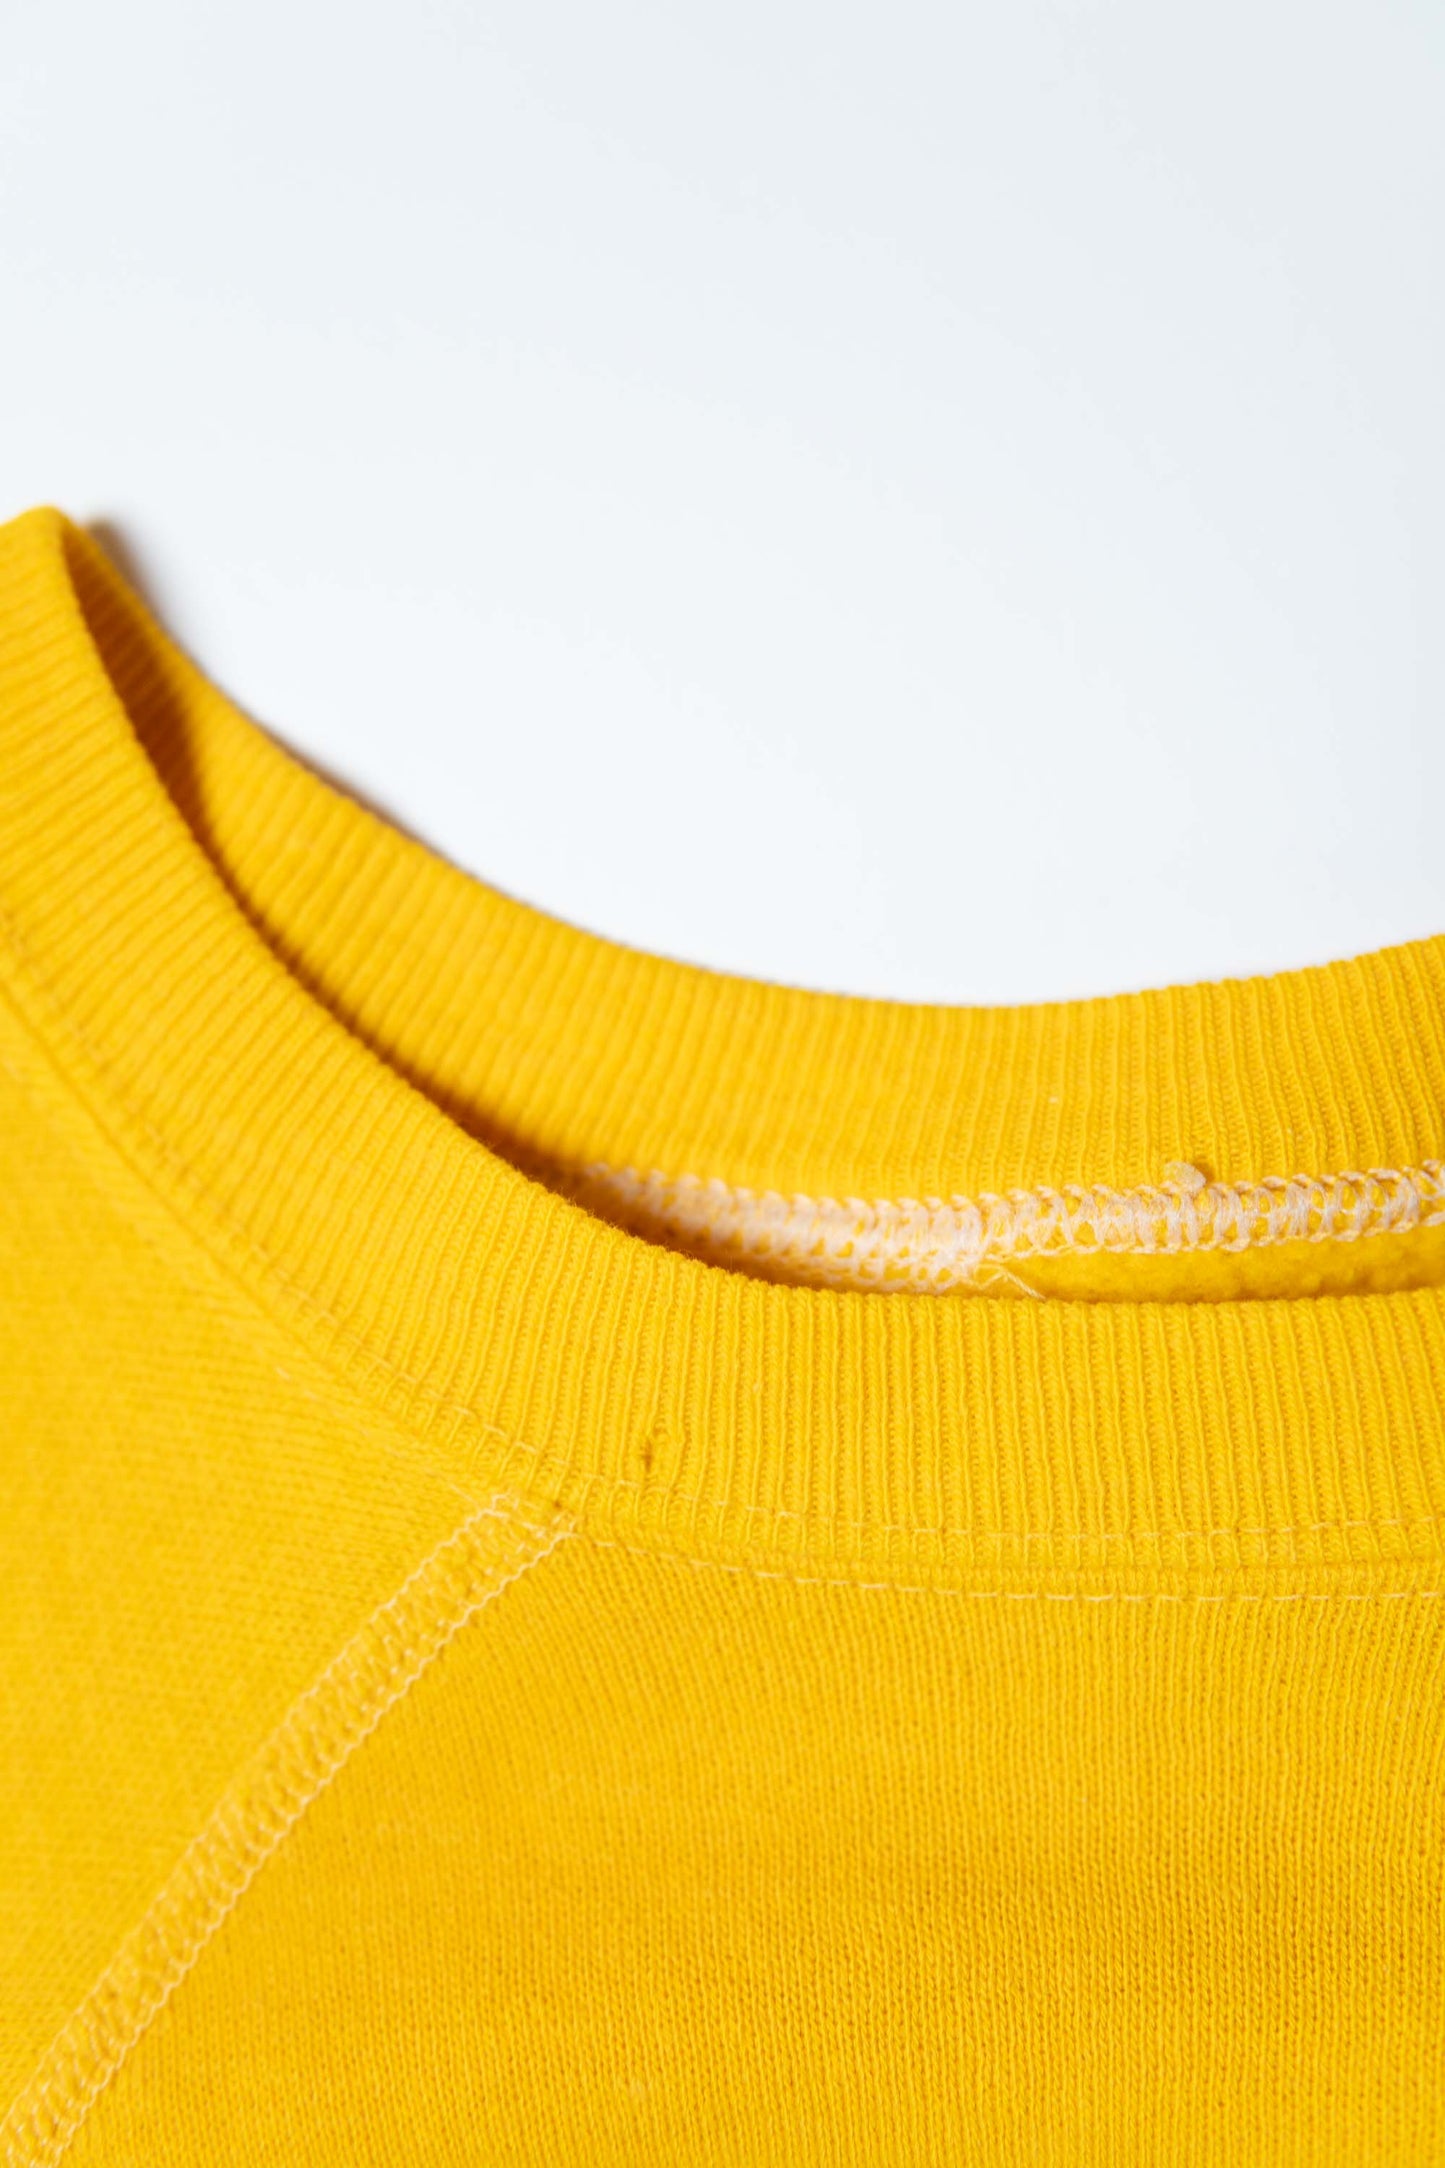 80s Steelers Yellow Sweatshirts